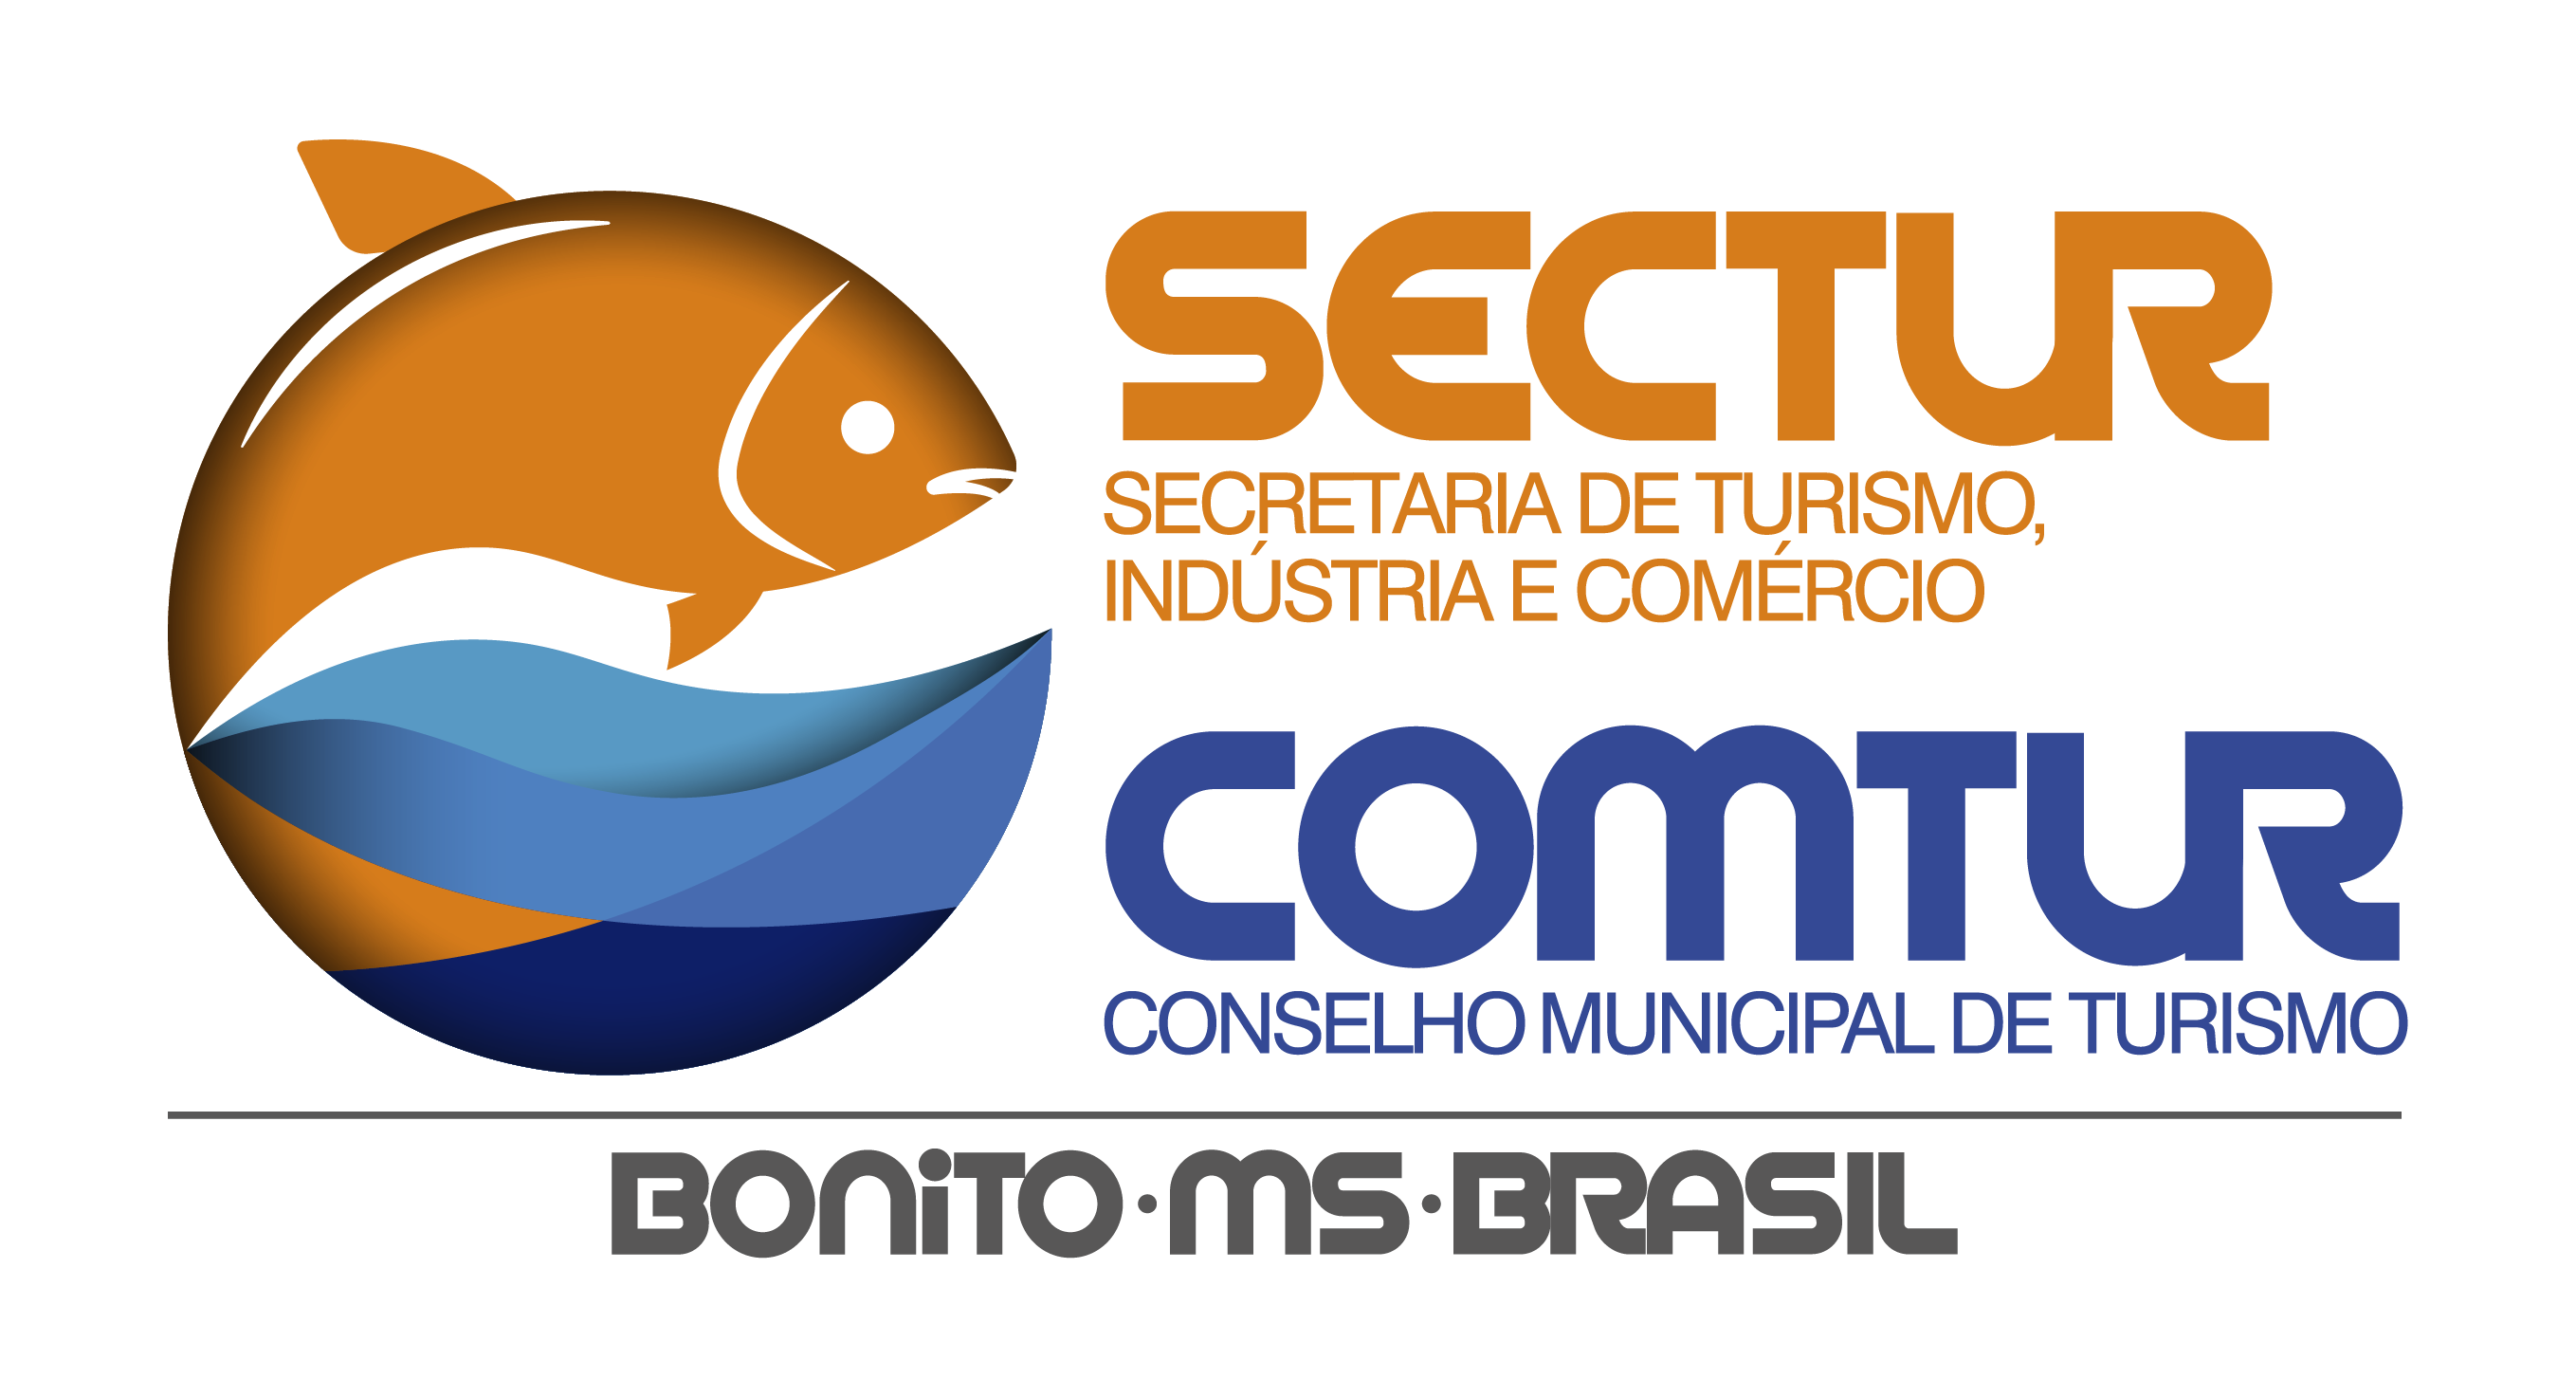 O Conselho Municipal de Turismo - COMTUR foi criado no ano de 1995